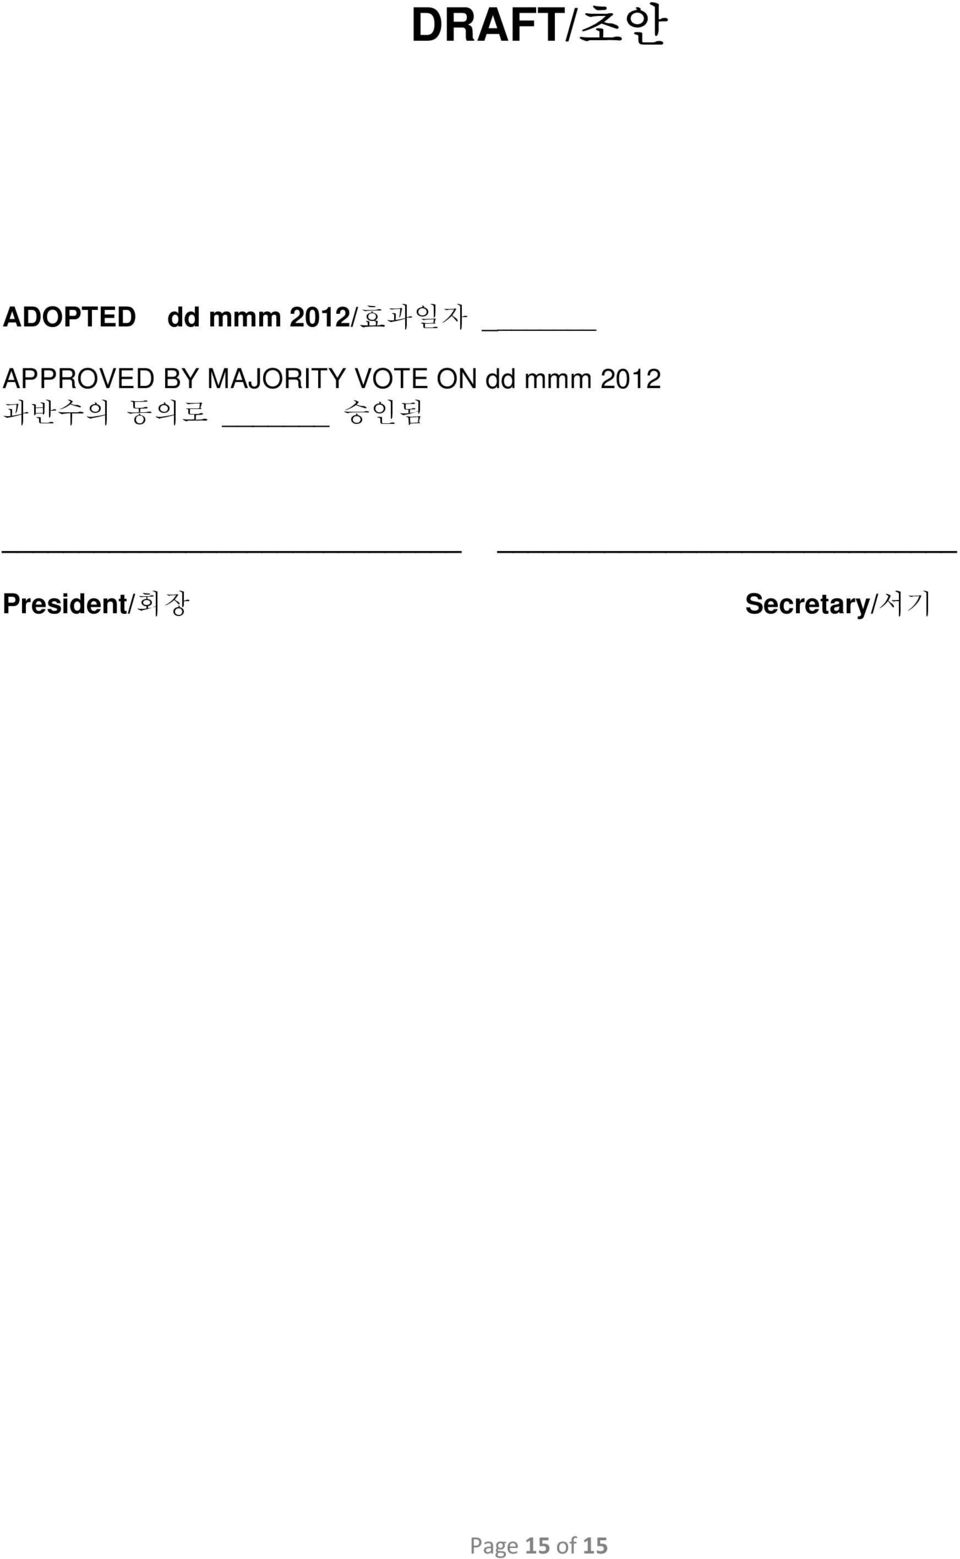 dd mmm 2012 과반수의 동의로 승인됨